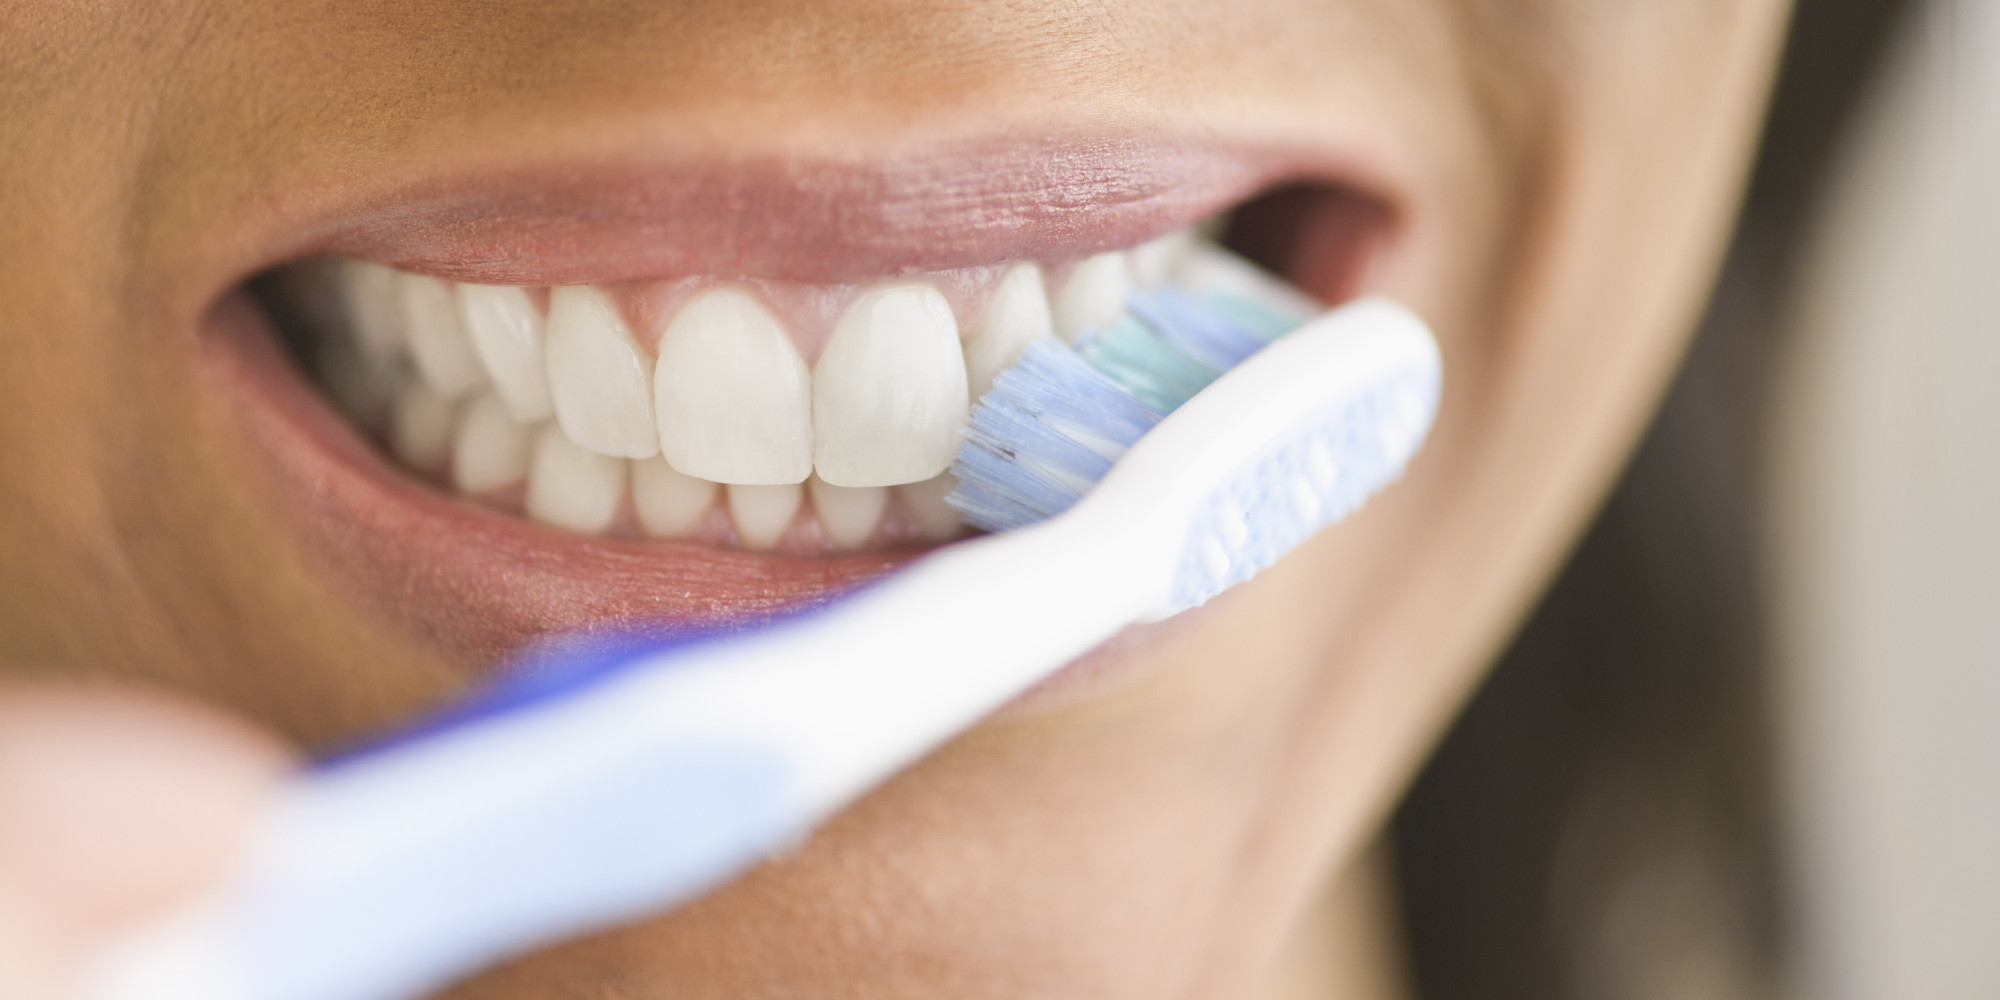 is de juiste manier tanden poetsen? | blog | Plein